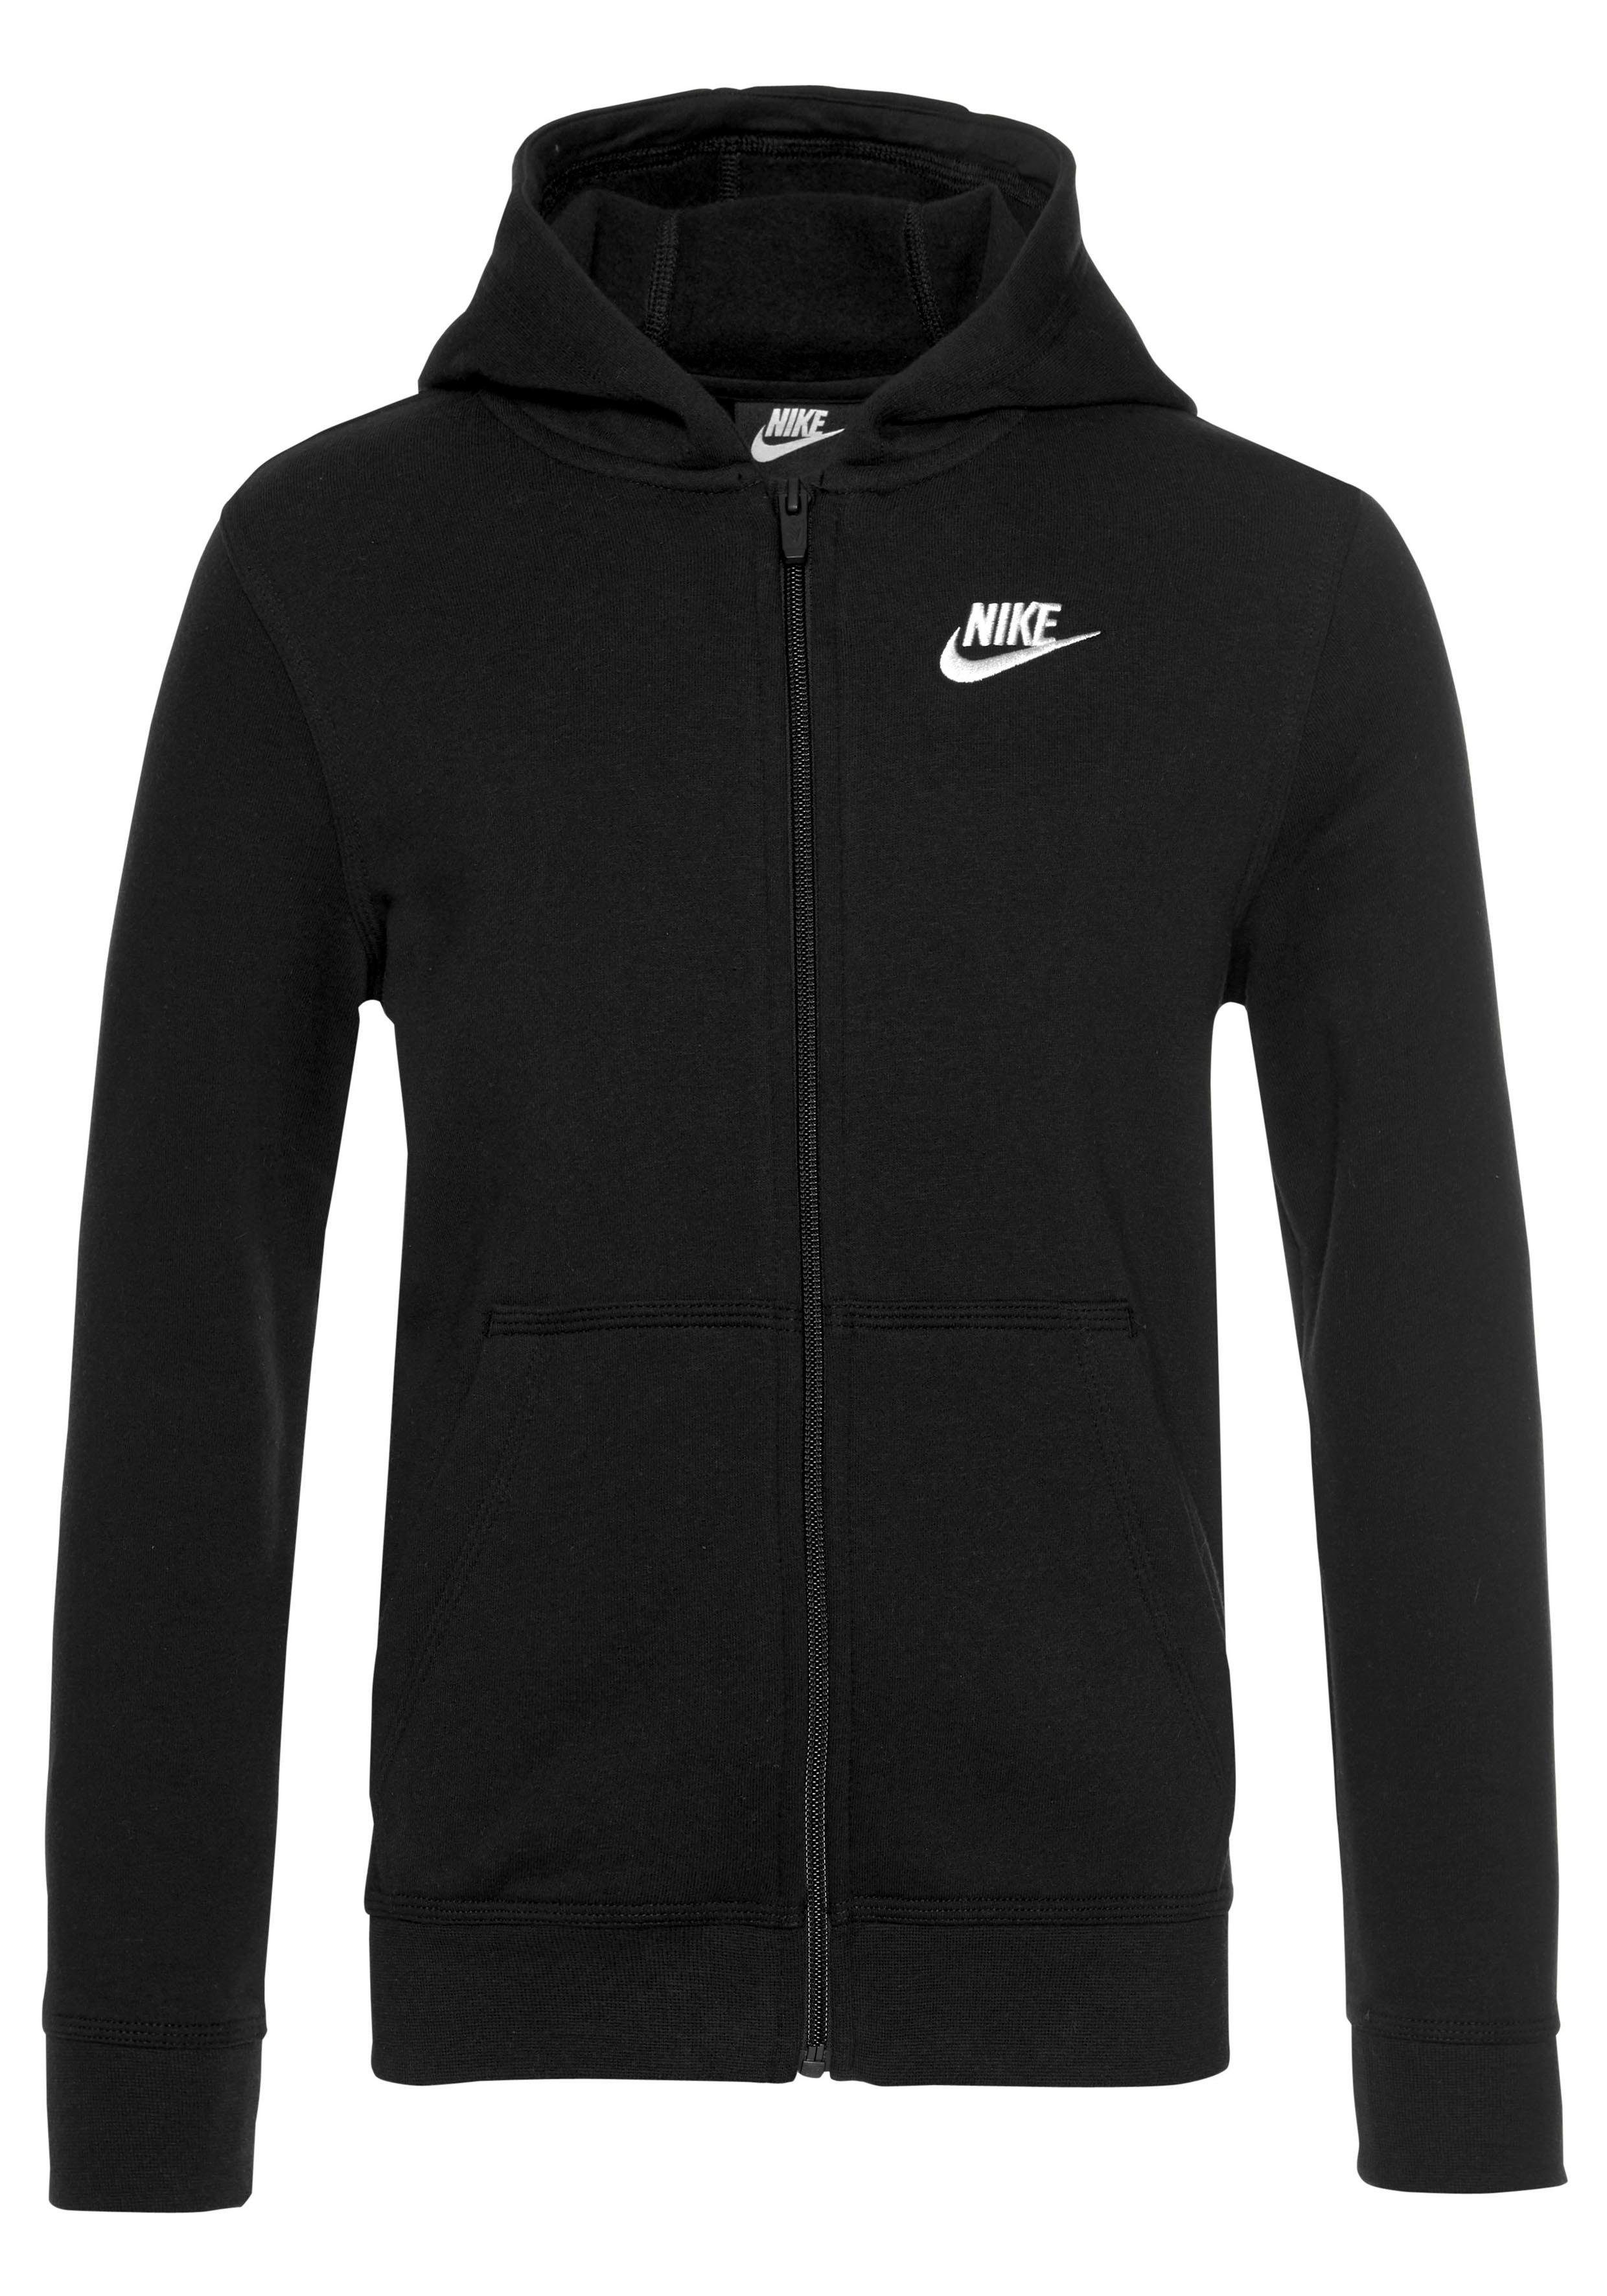 Nike NSW schwarz FZ CLUB Kapuzensweatjacke für HOODIE Sportswear Kinder -